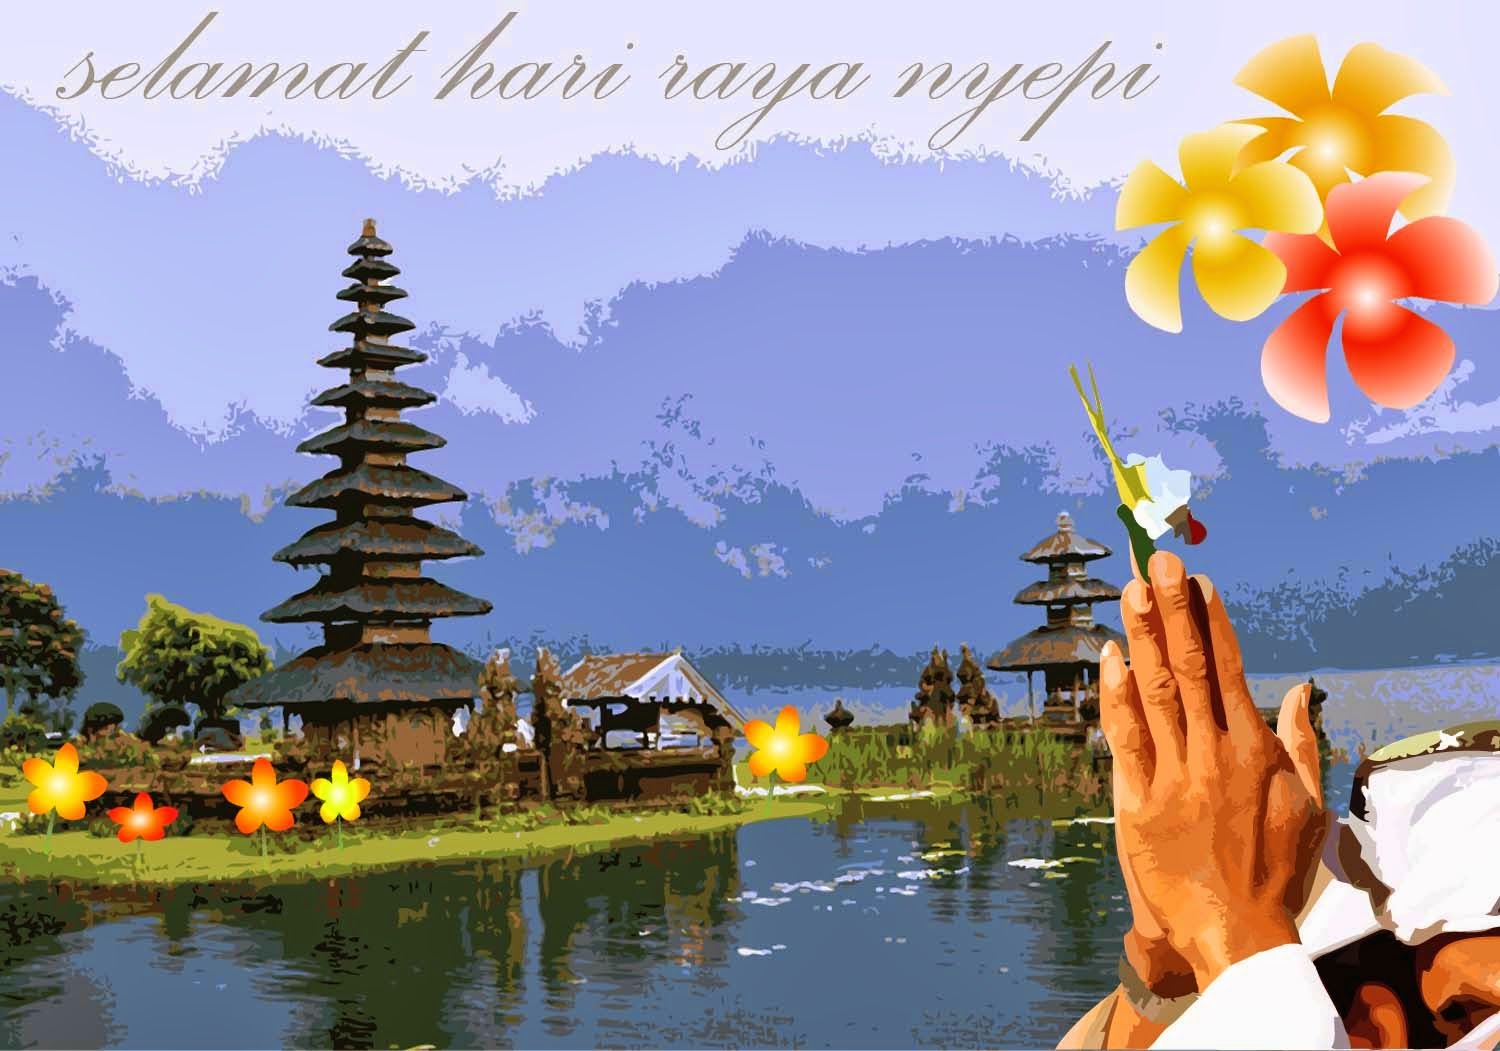 Kumpulan Ucapan Selamat Hari Raya Nyepi 2014 - Hello Ridwan